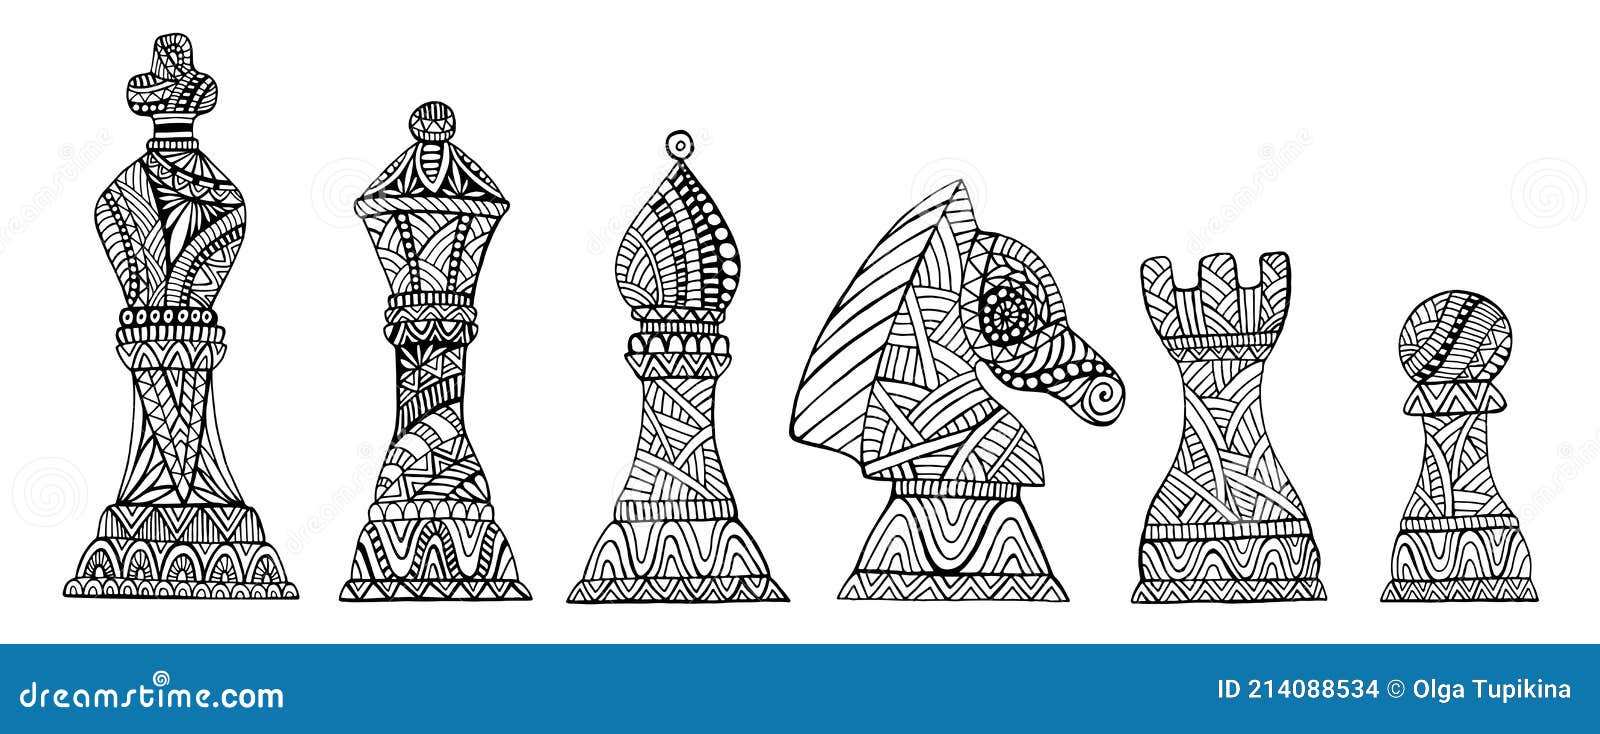 Desenho Para Colorir peças de xadrez - Imagens Grátis Para